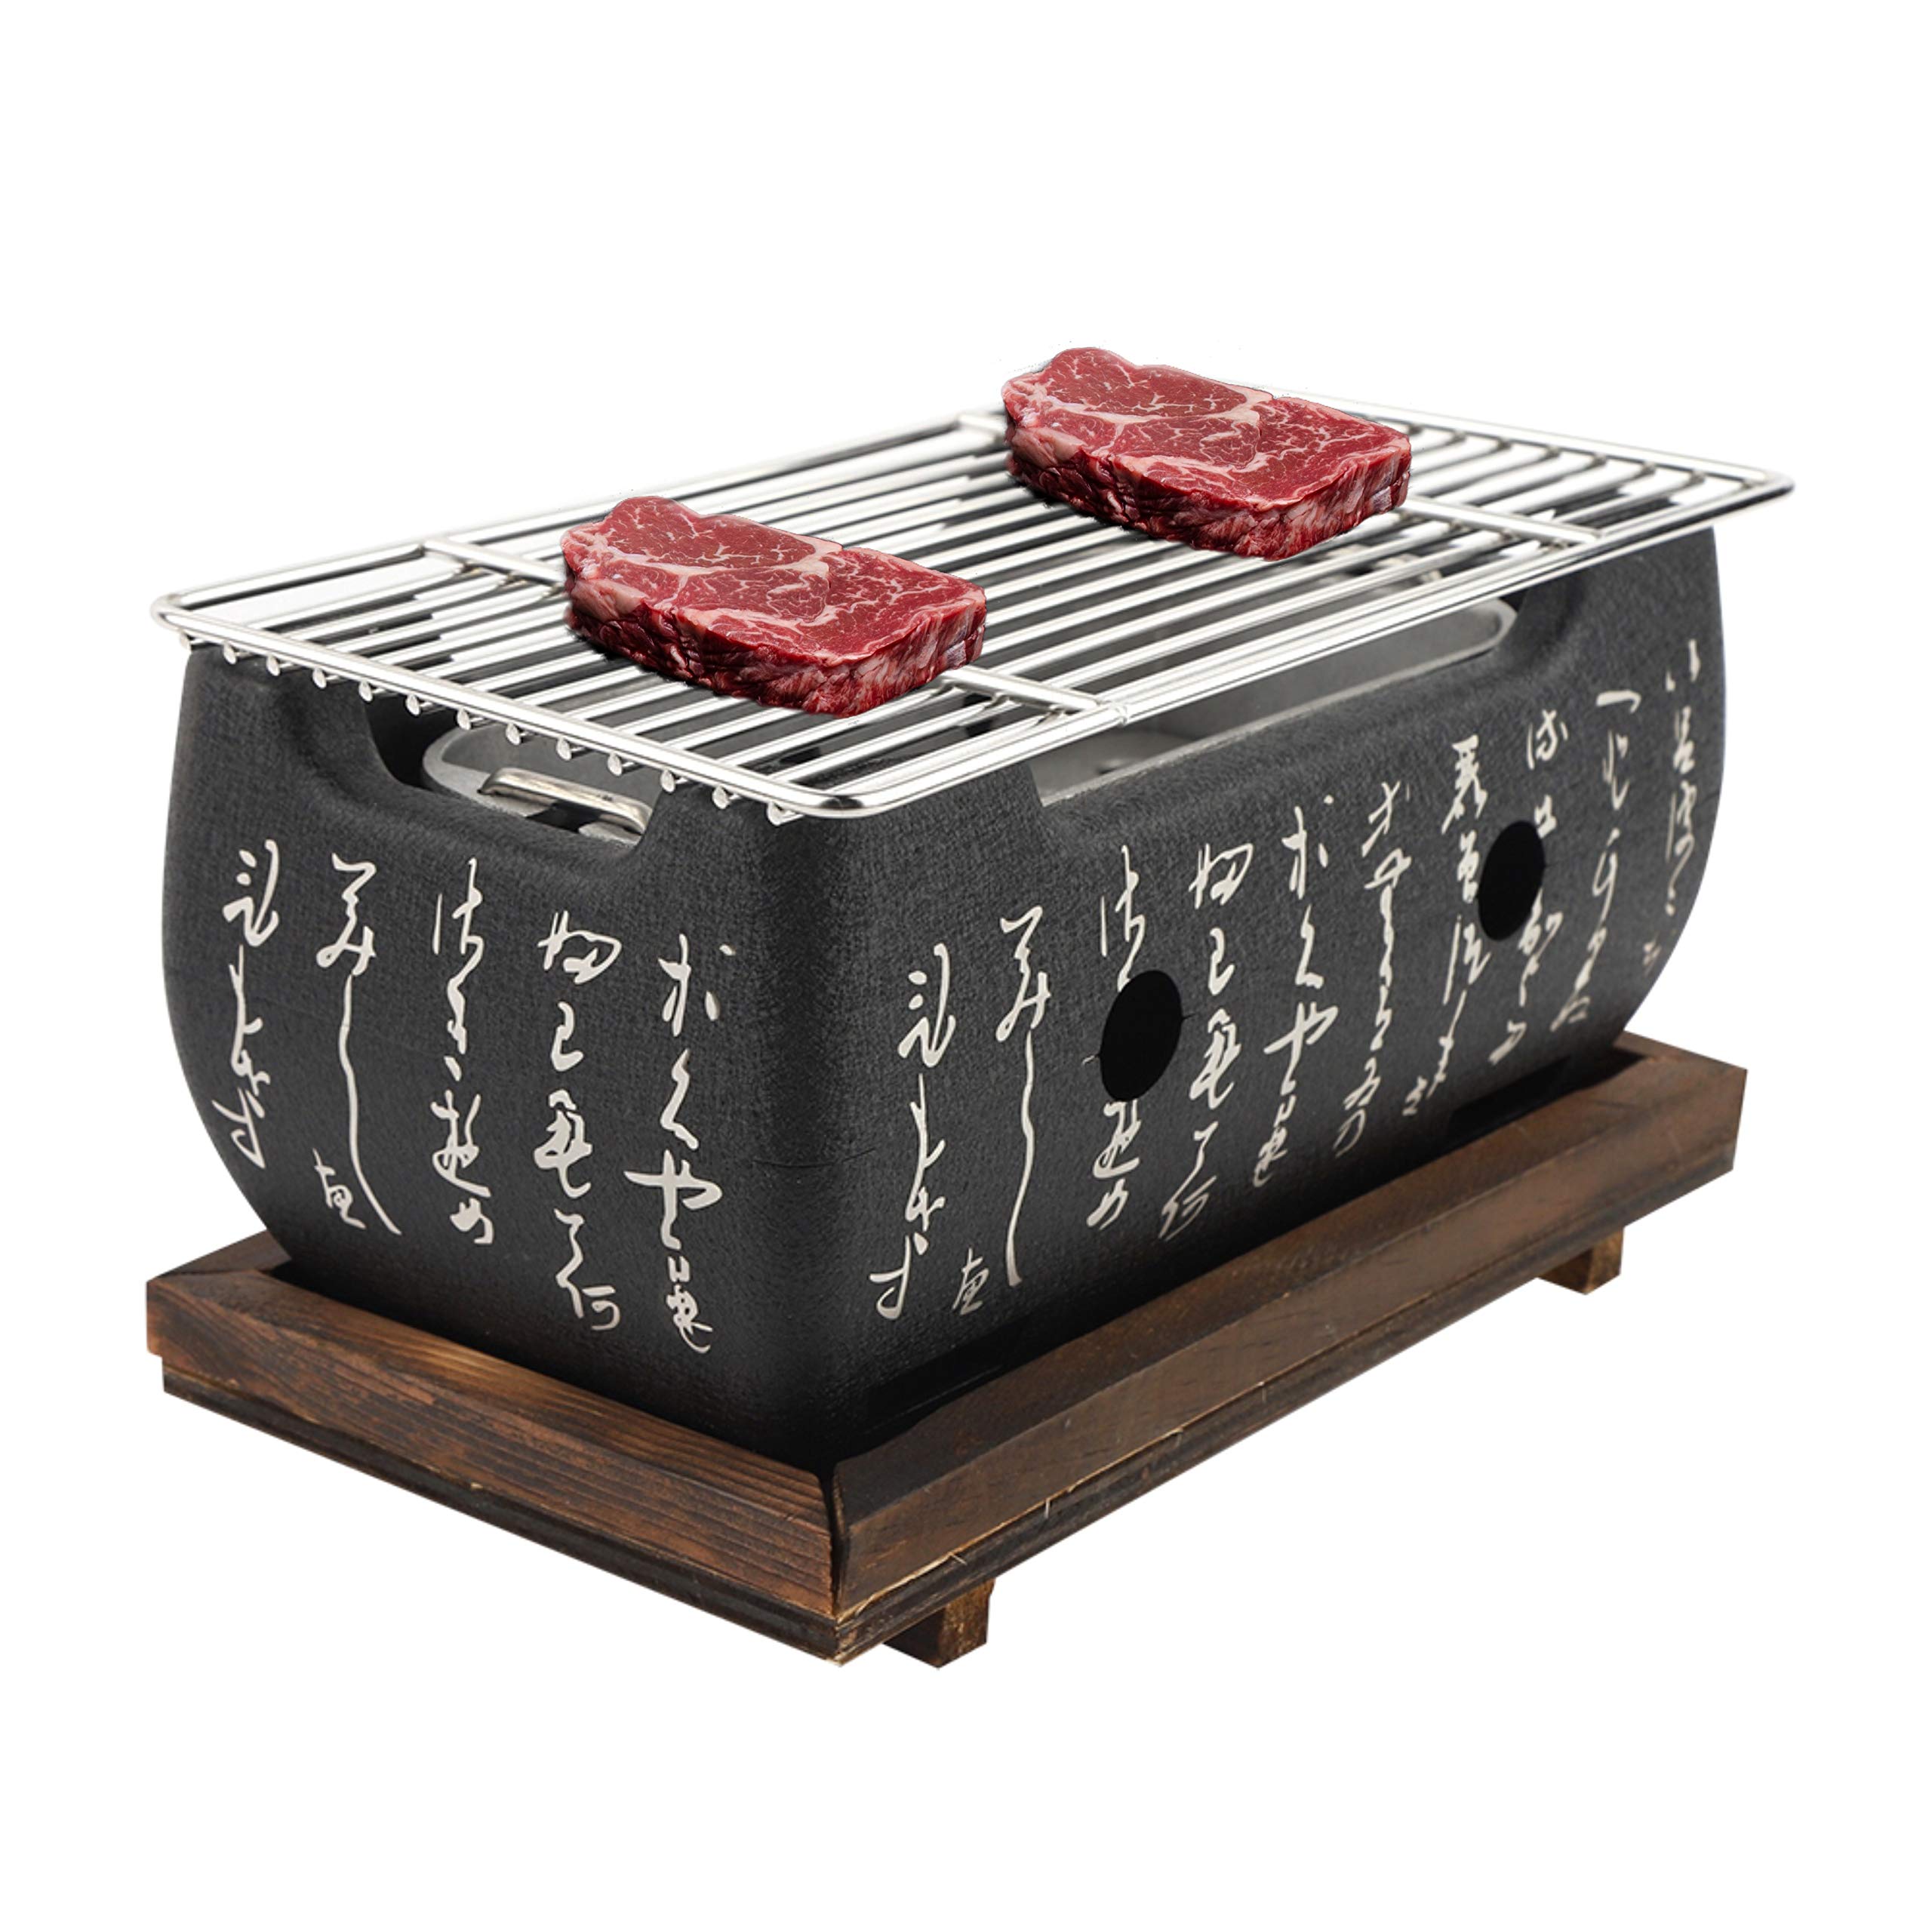 JULYKAI Japanischer Grill | Rechteckiger Holzkohleofen für japanische Küche | Japanischer Yakiniku Grill für Robata, Yakitori, Takoyaki und BBQ